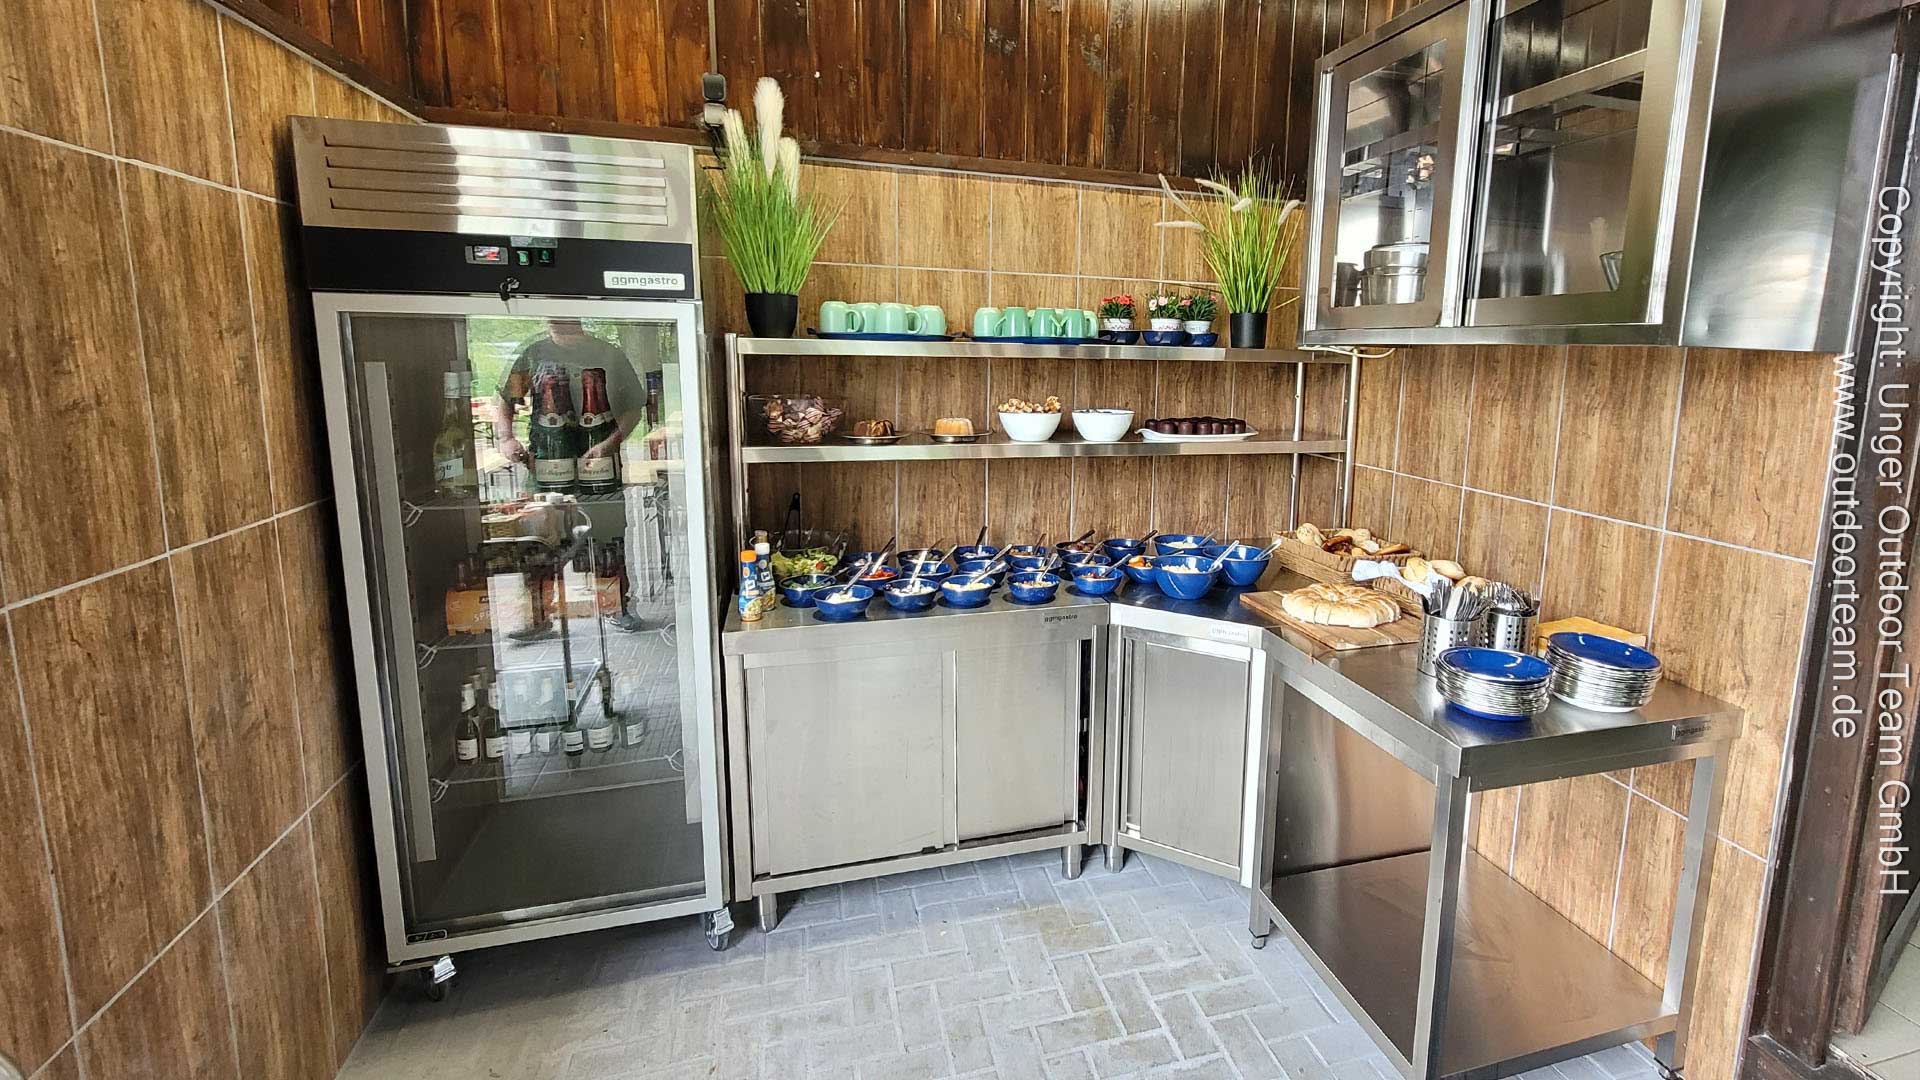 Große Grilltour - modern ausgestatteter Küchenbereich mit Kühlschrank und Salatbüfett